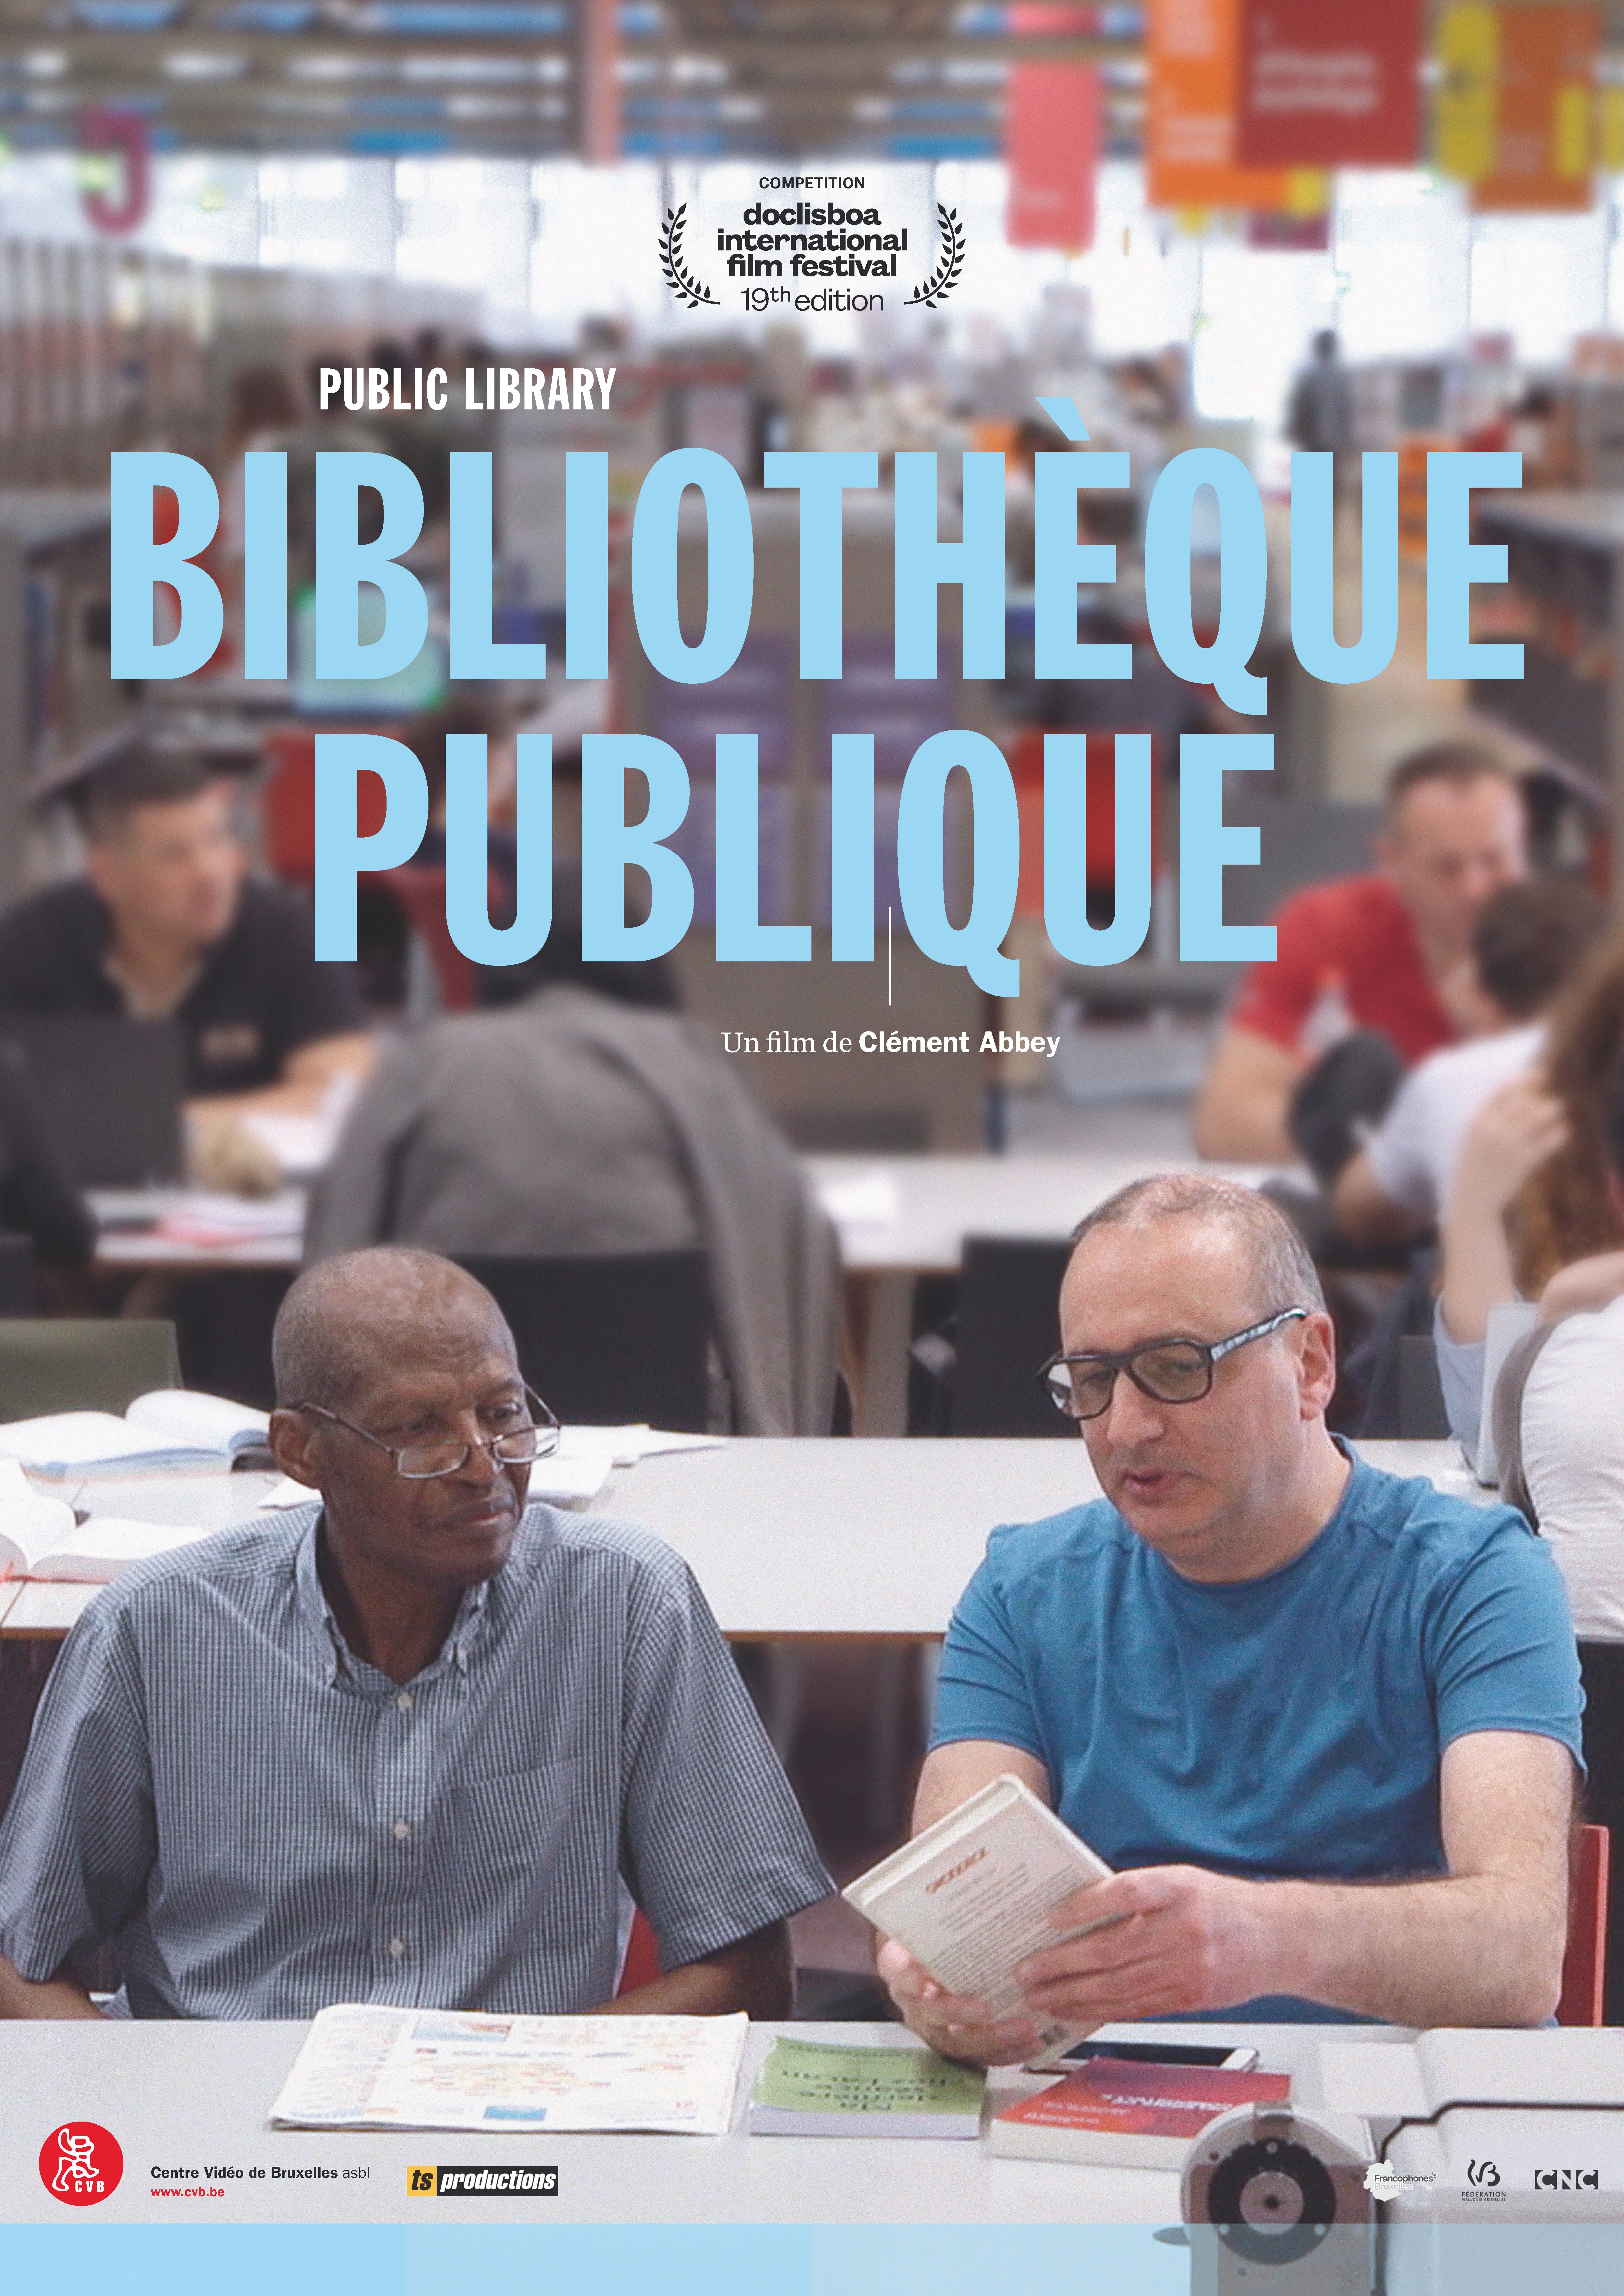 Bibliothèque publique - Clément Abbey